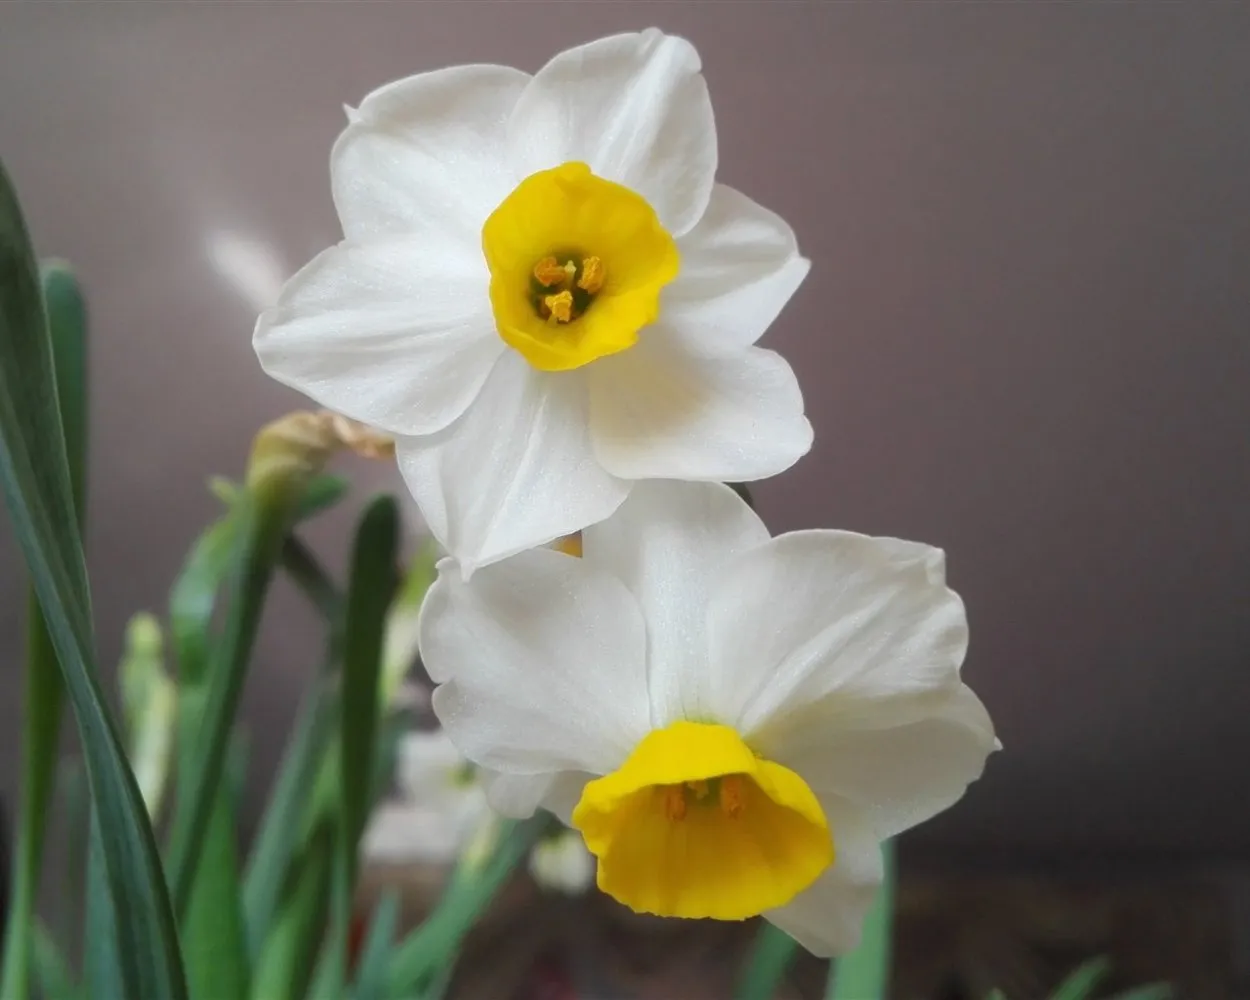 Цветок белый с желтой серединой